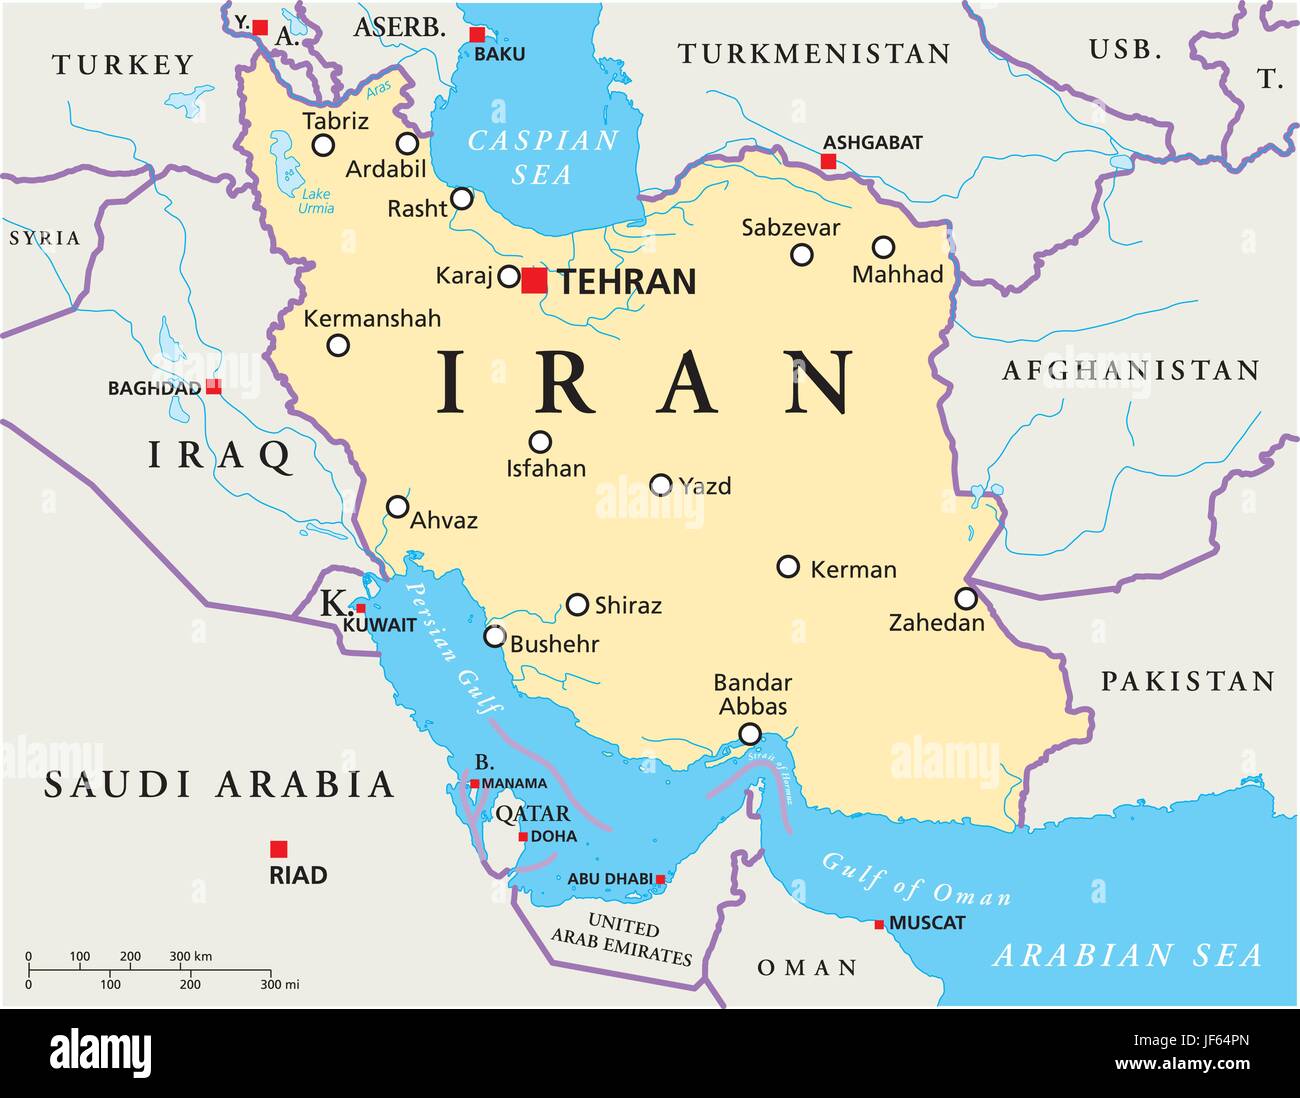 Iran, persia, mappa, Atlas, mappa del mondo politico, arabo, Iran, Persia, Illustrazione Vettoriale